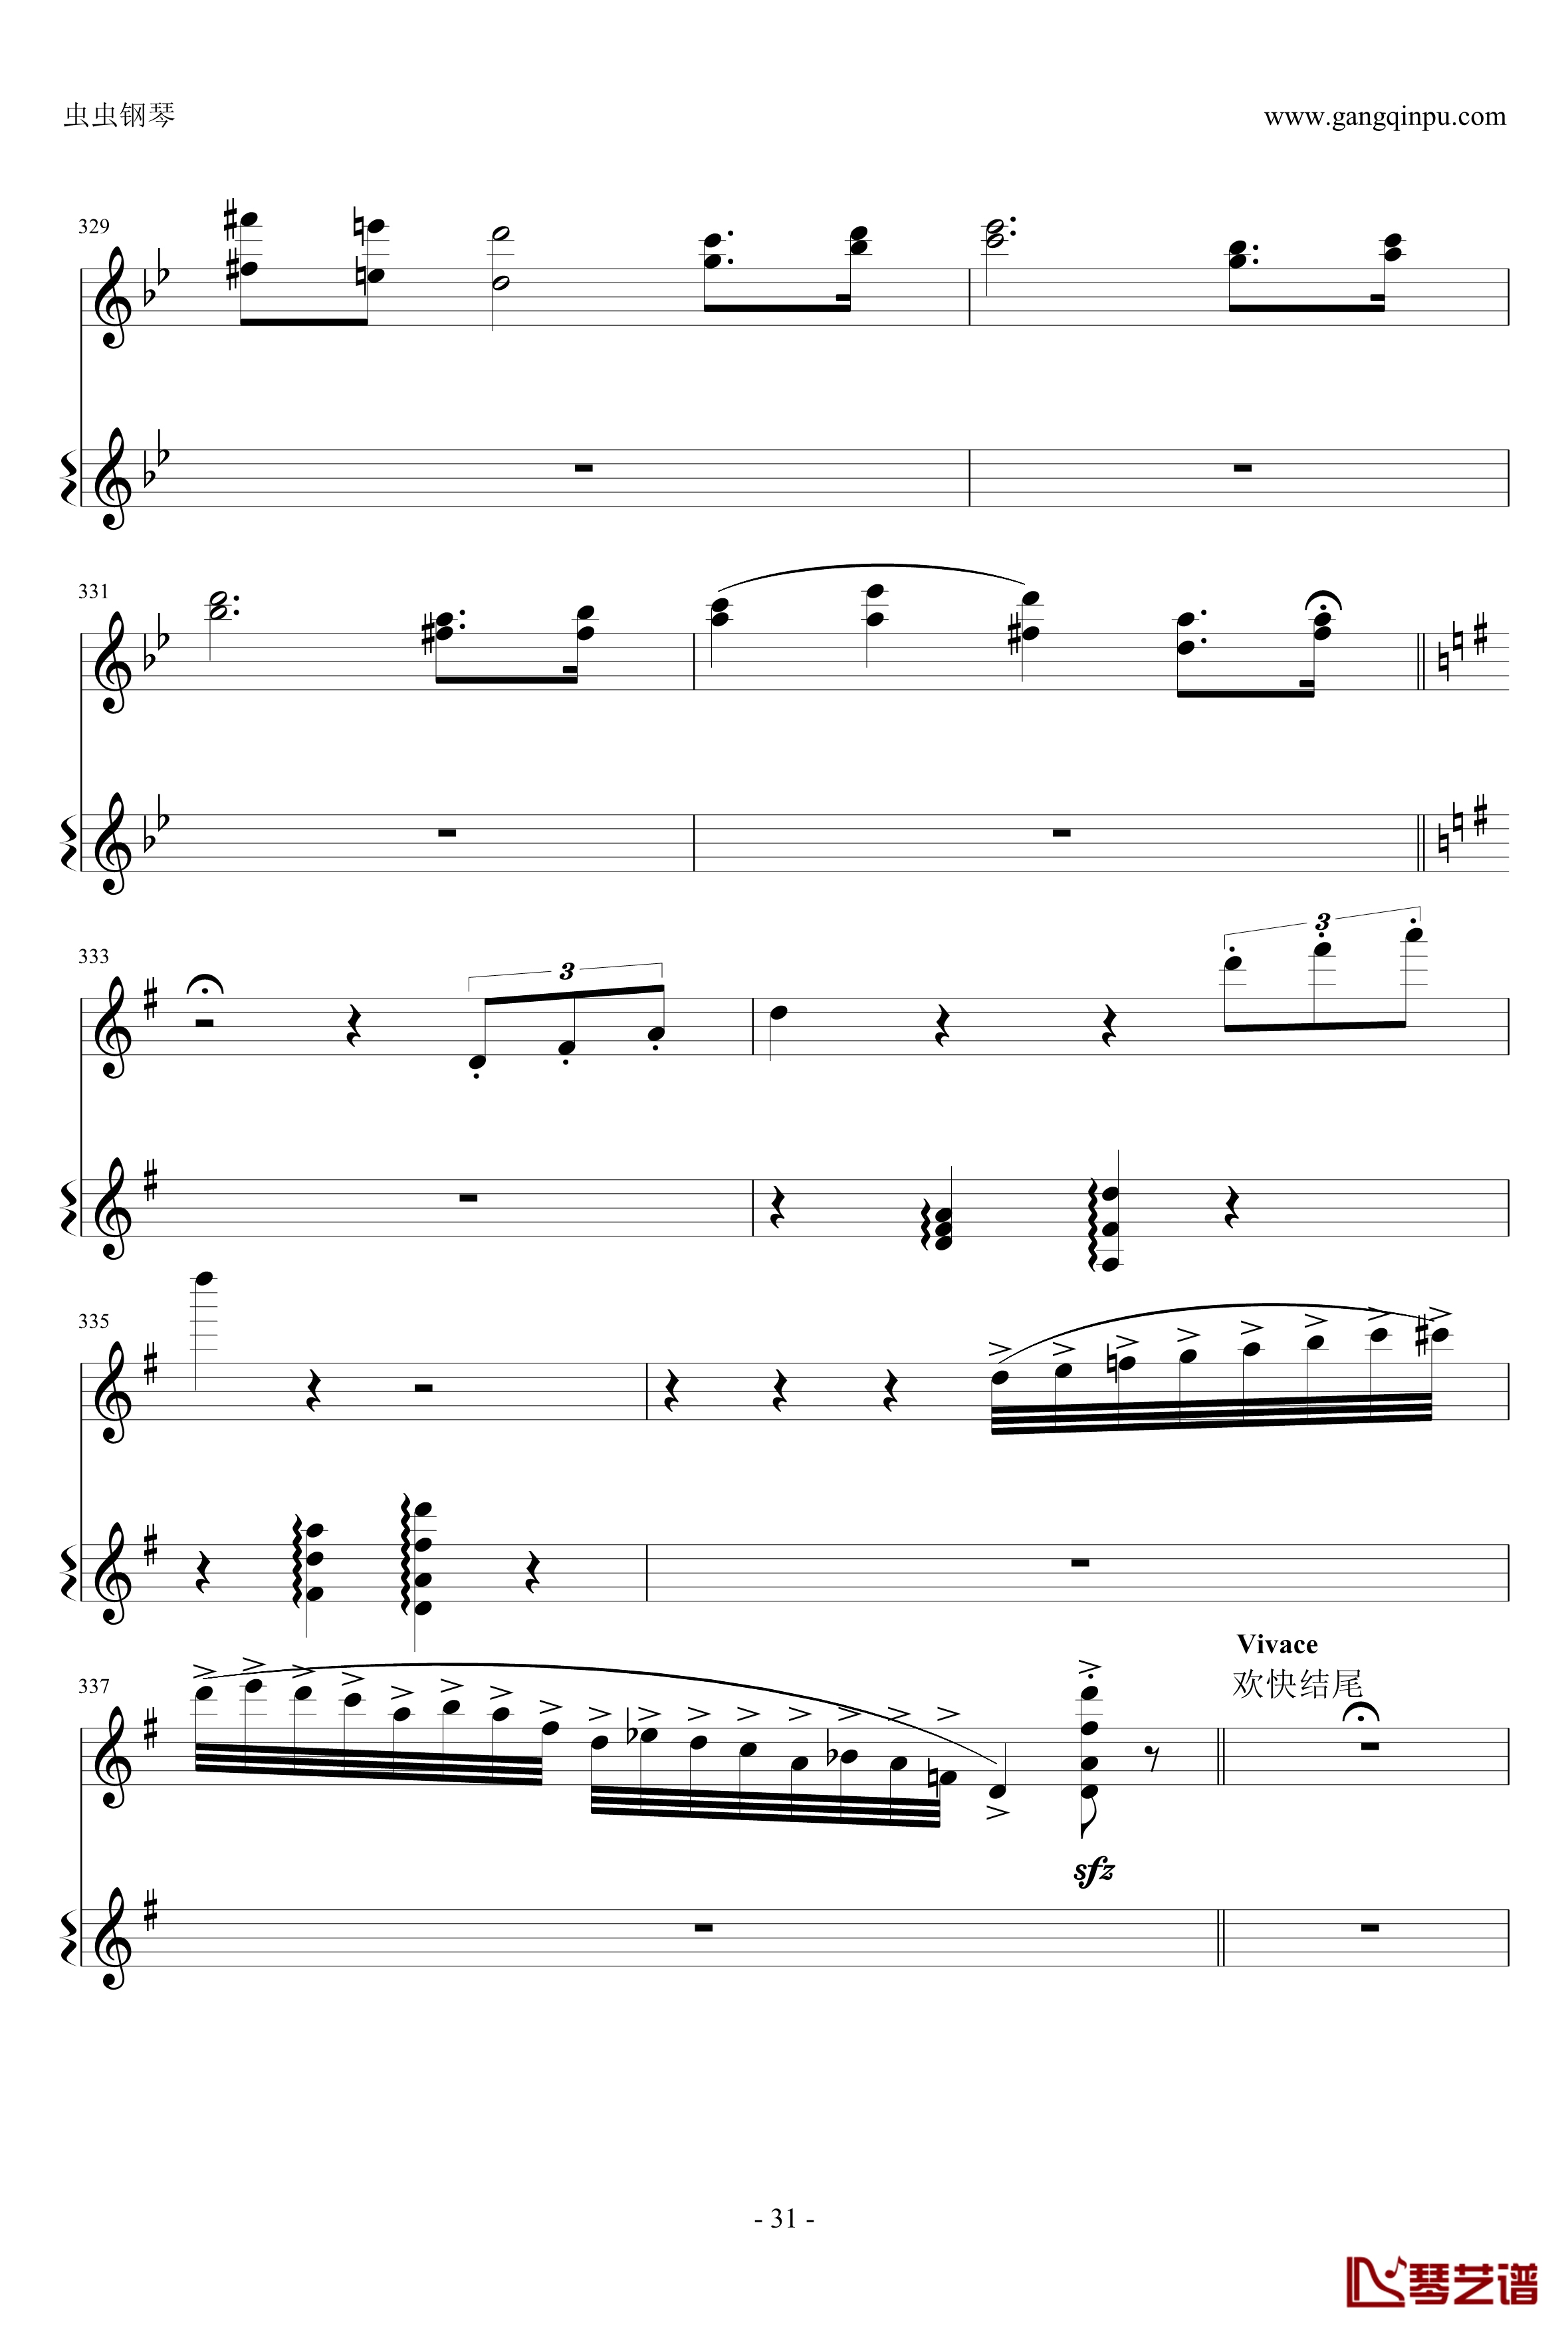 意大利国歌钢琴谱-变奏曲修改版-DXF31